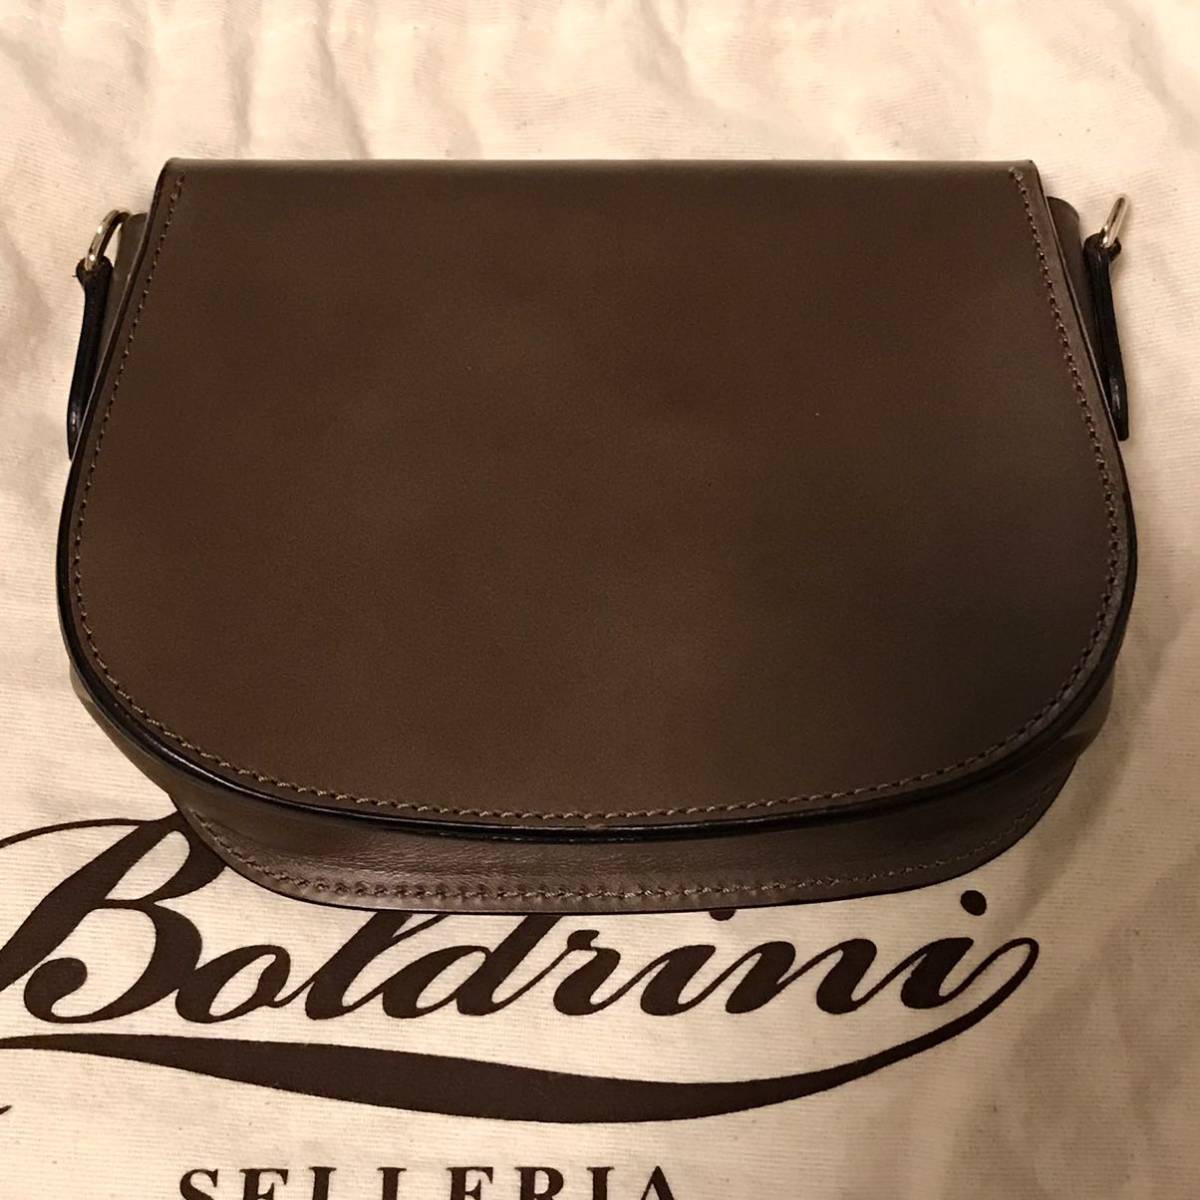 送料込 最終値下げ 定3.3万極美品 Boldrini SELLERIA ボルドリーニセレリア レザーミニバッグ バーニーズNY購入品